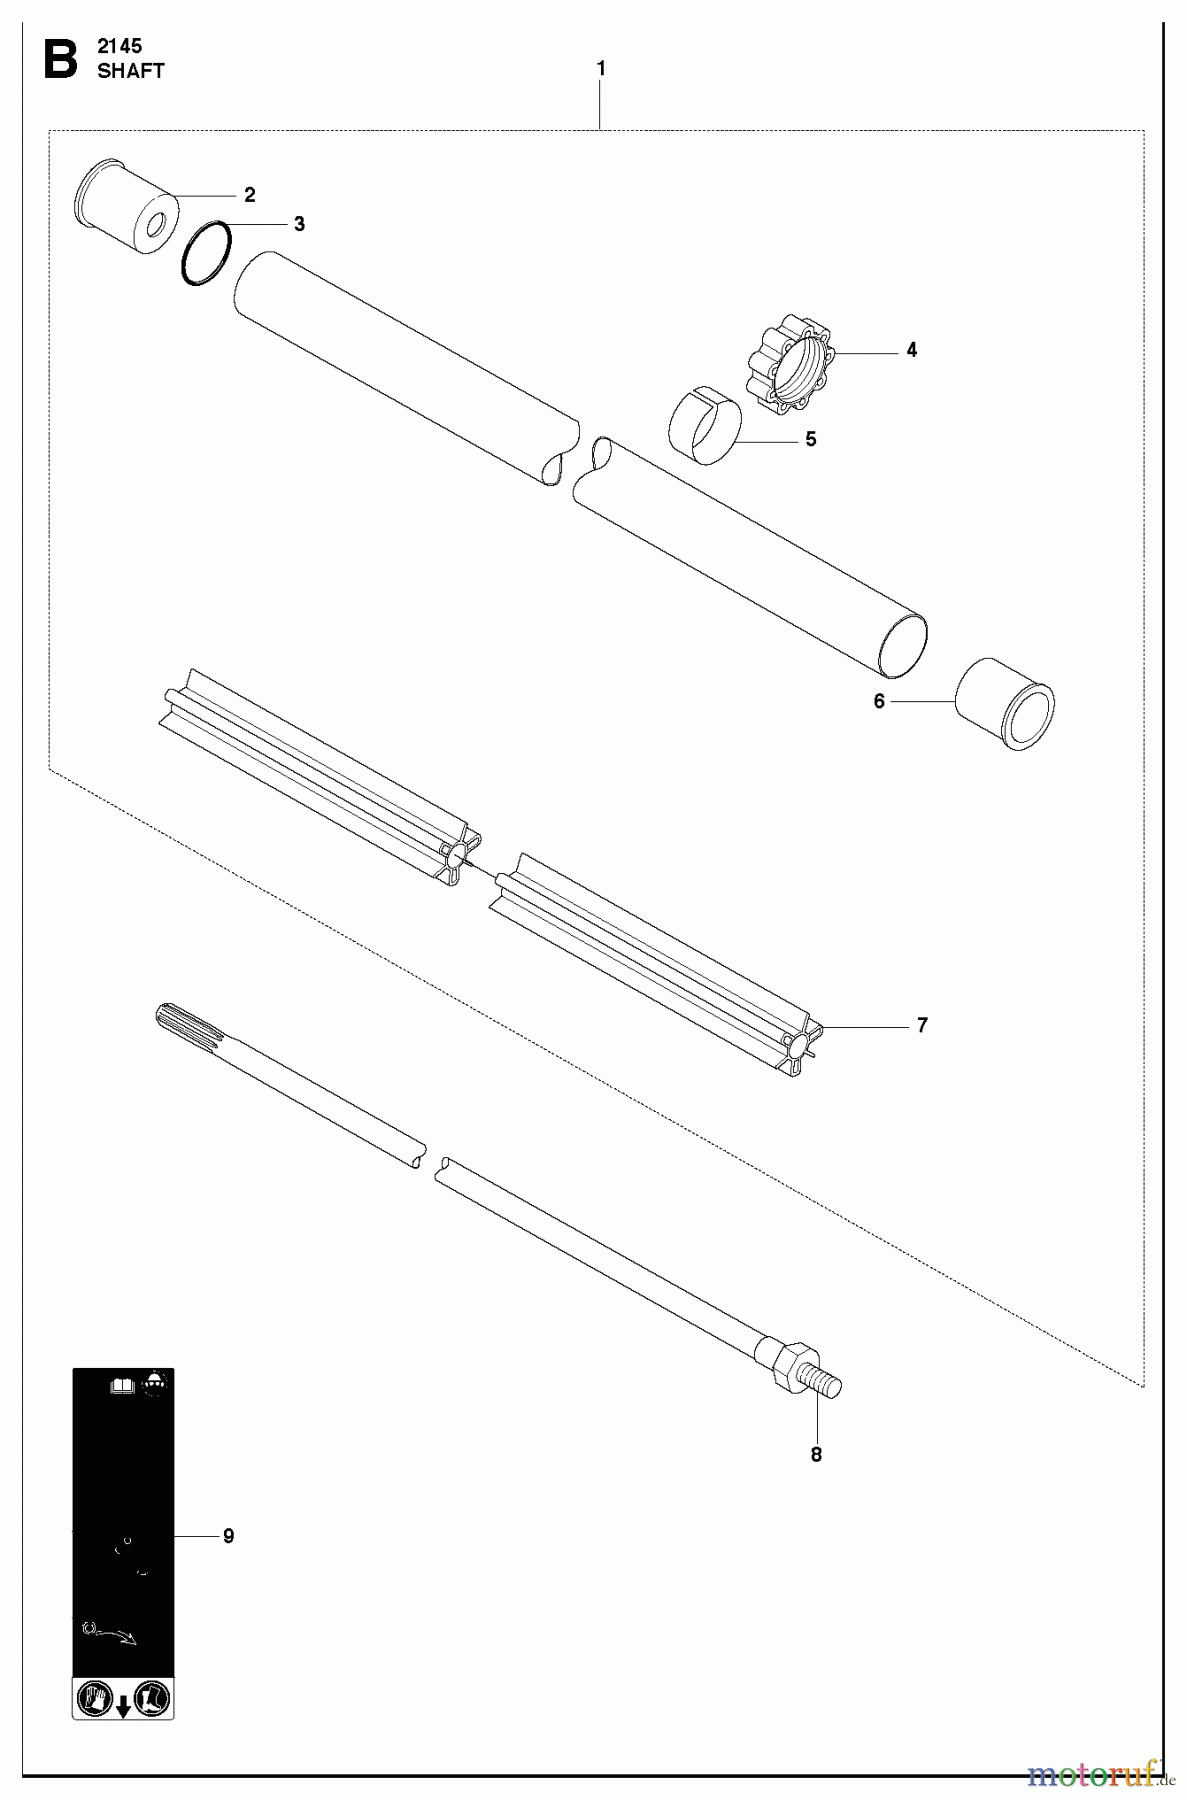  Jonsered Motorsensen, Trimmer FC2145S - Jonsered String/Brush Trimmer (2010-09) SHAFT